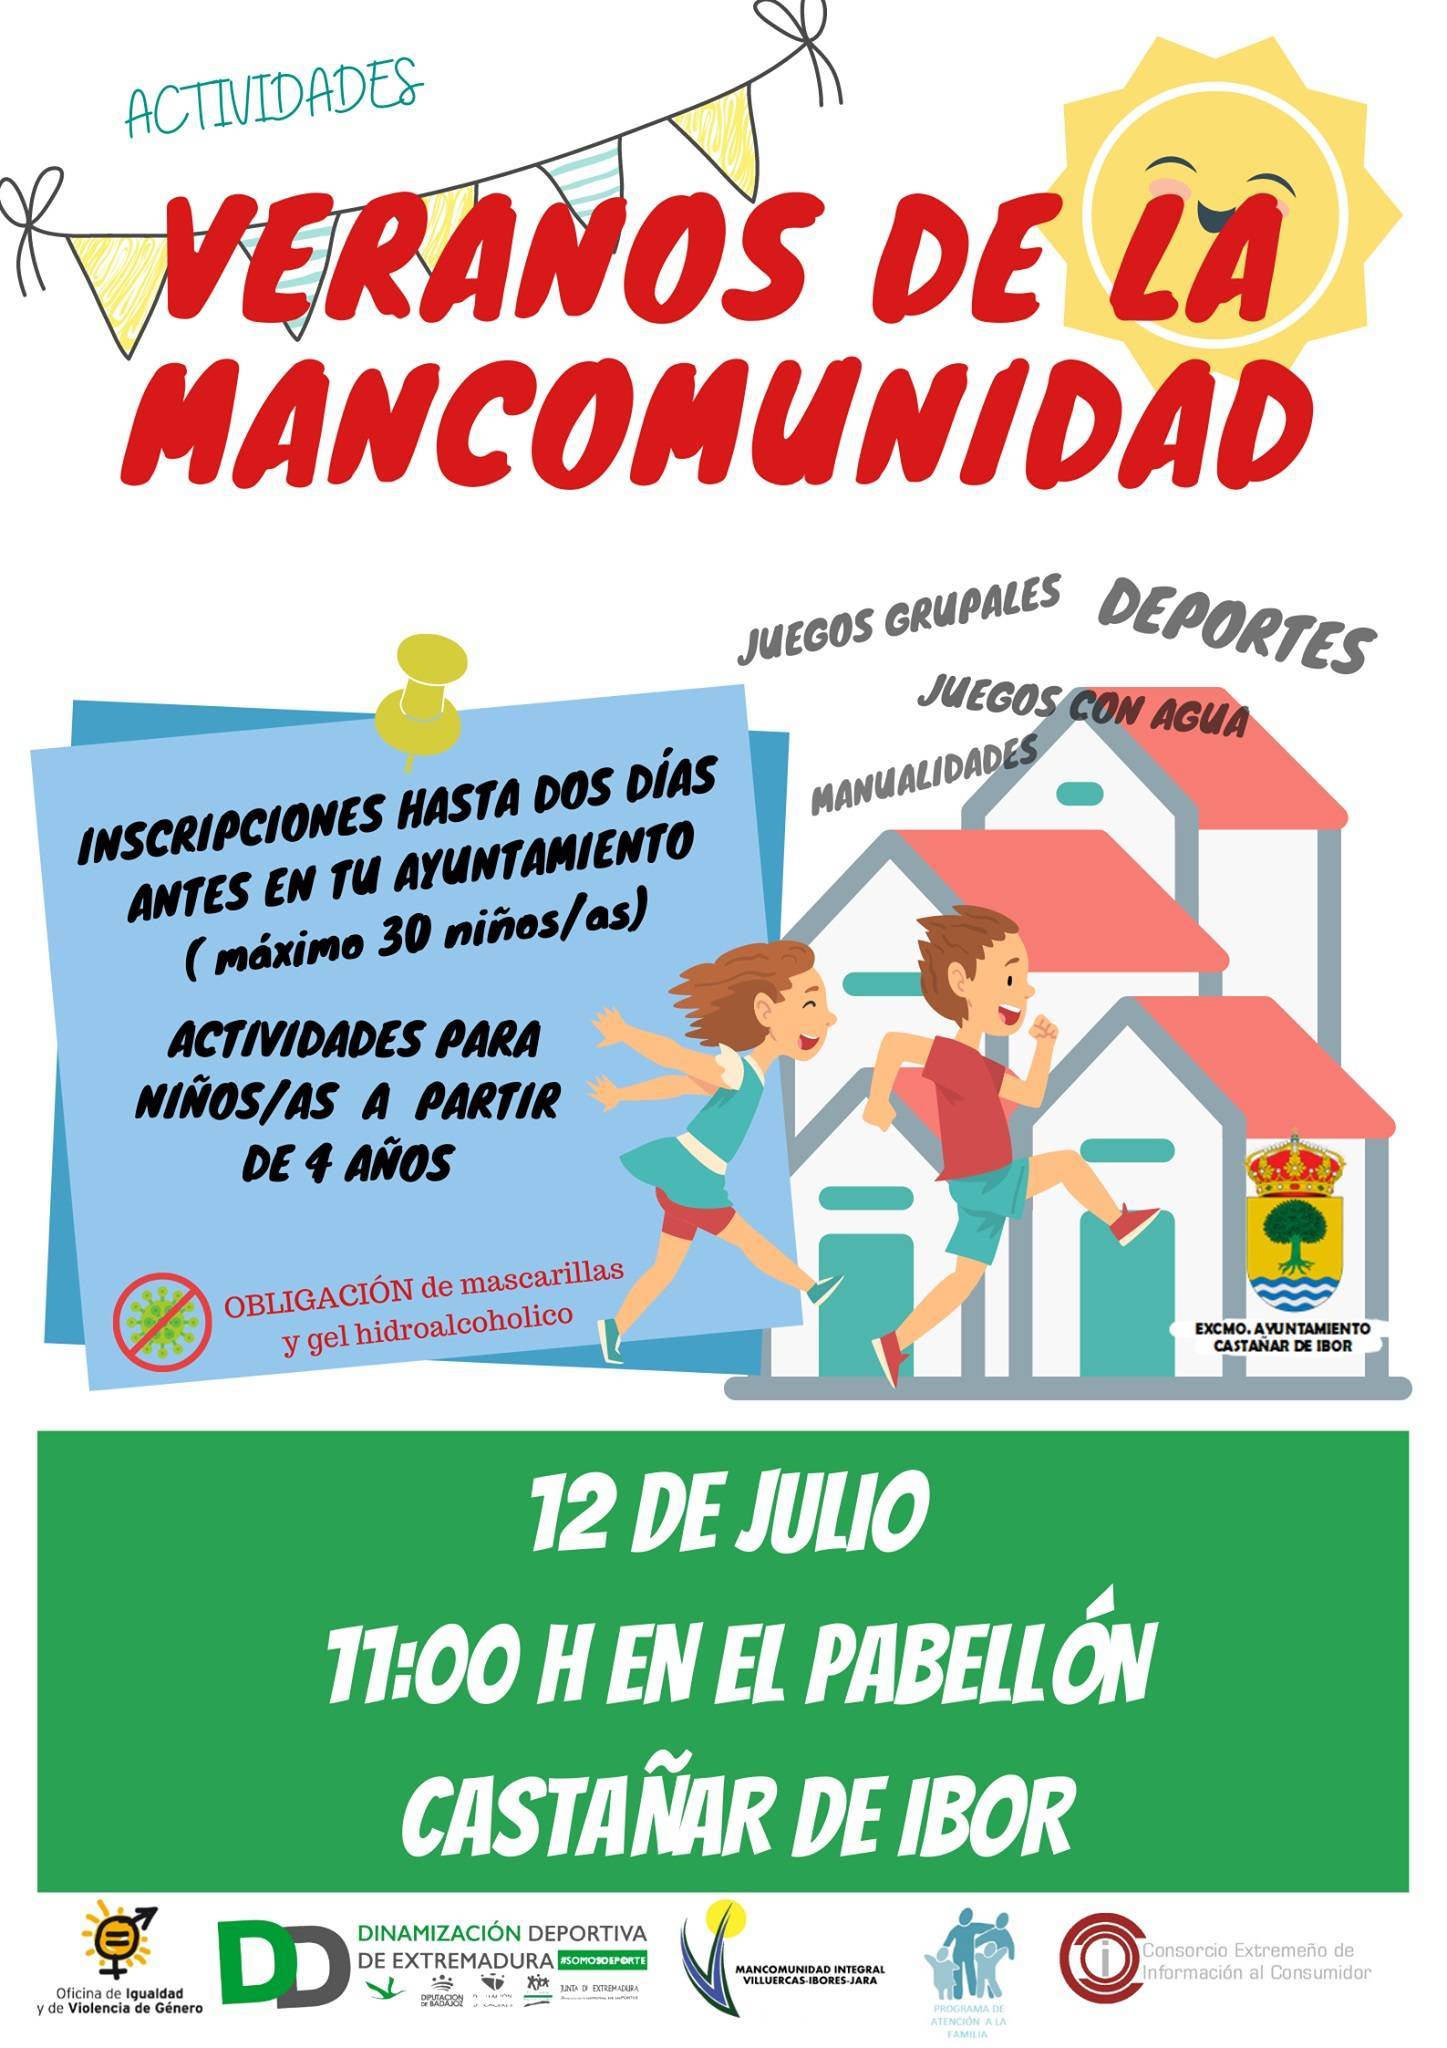 Veranos de la Mancomunidad (2021) - Castañar de Ibor (Cáceres)